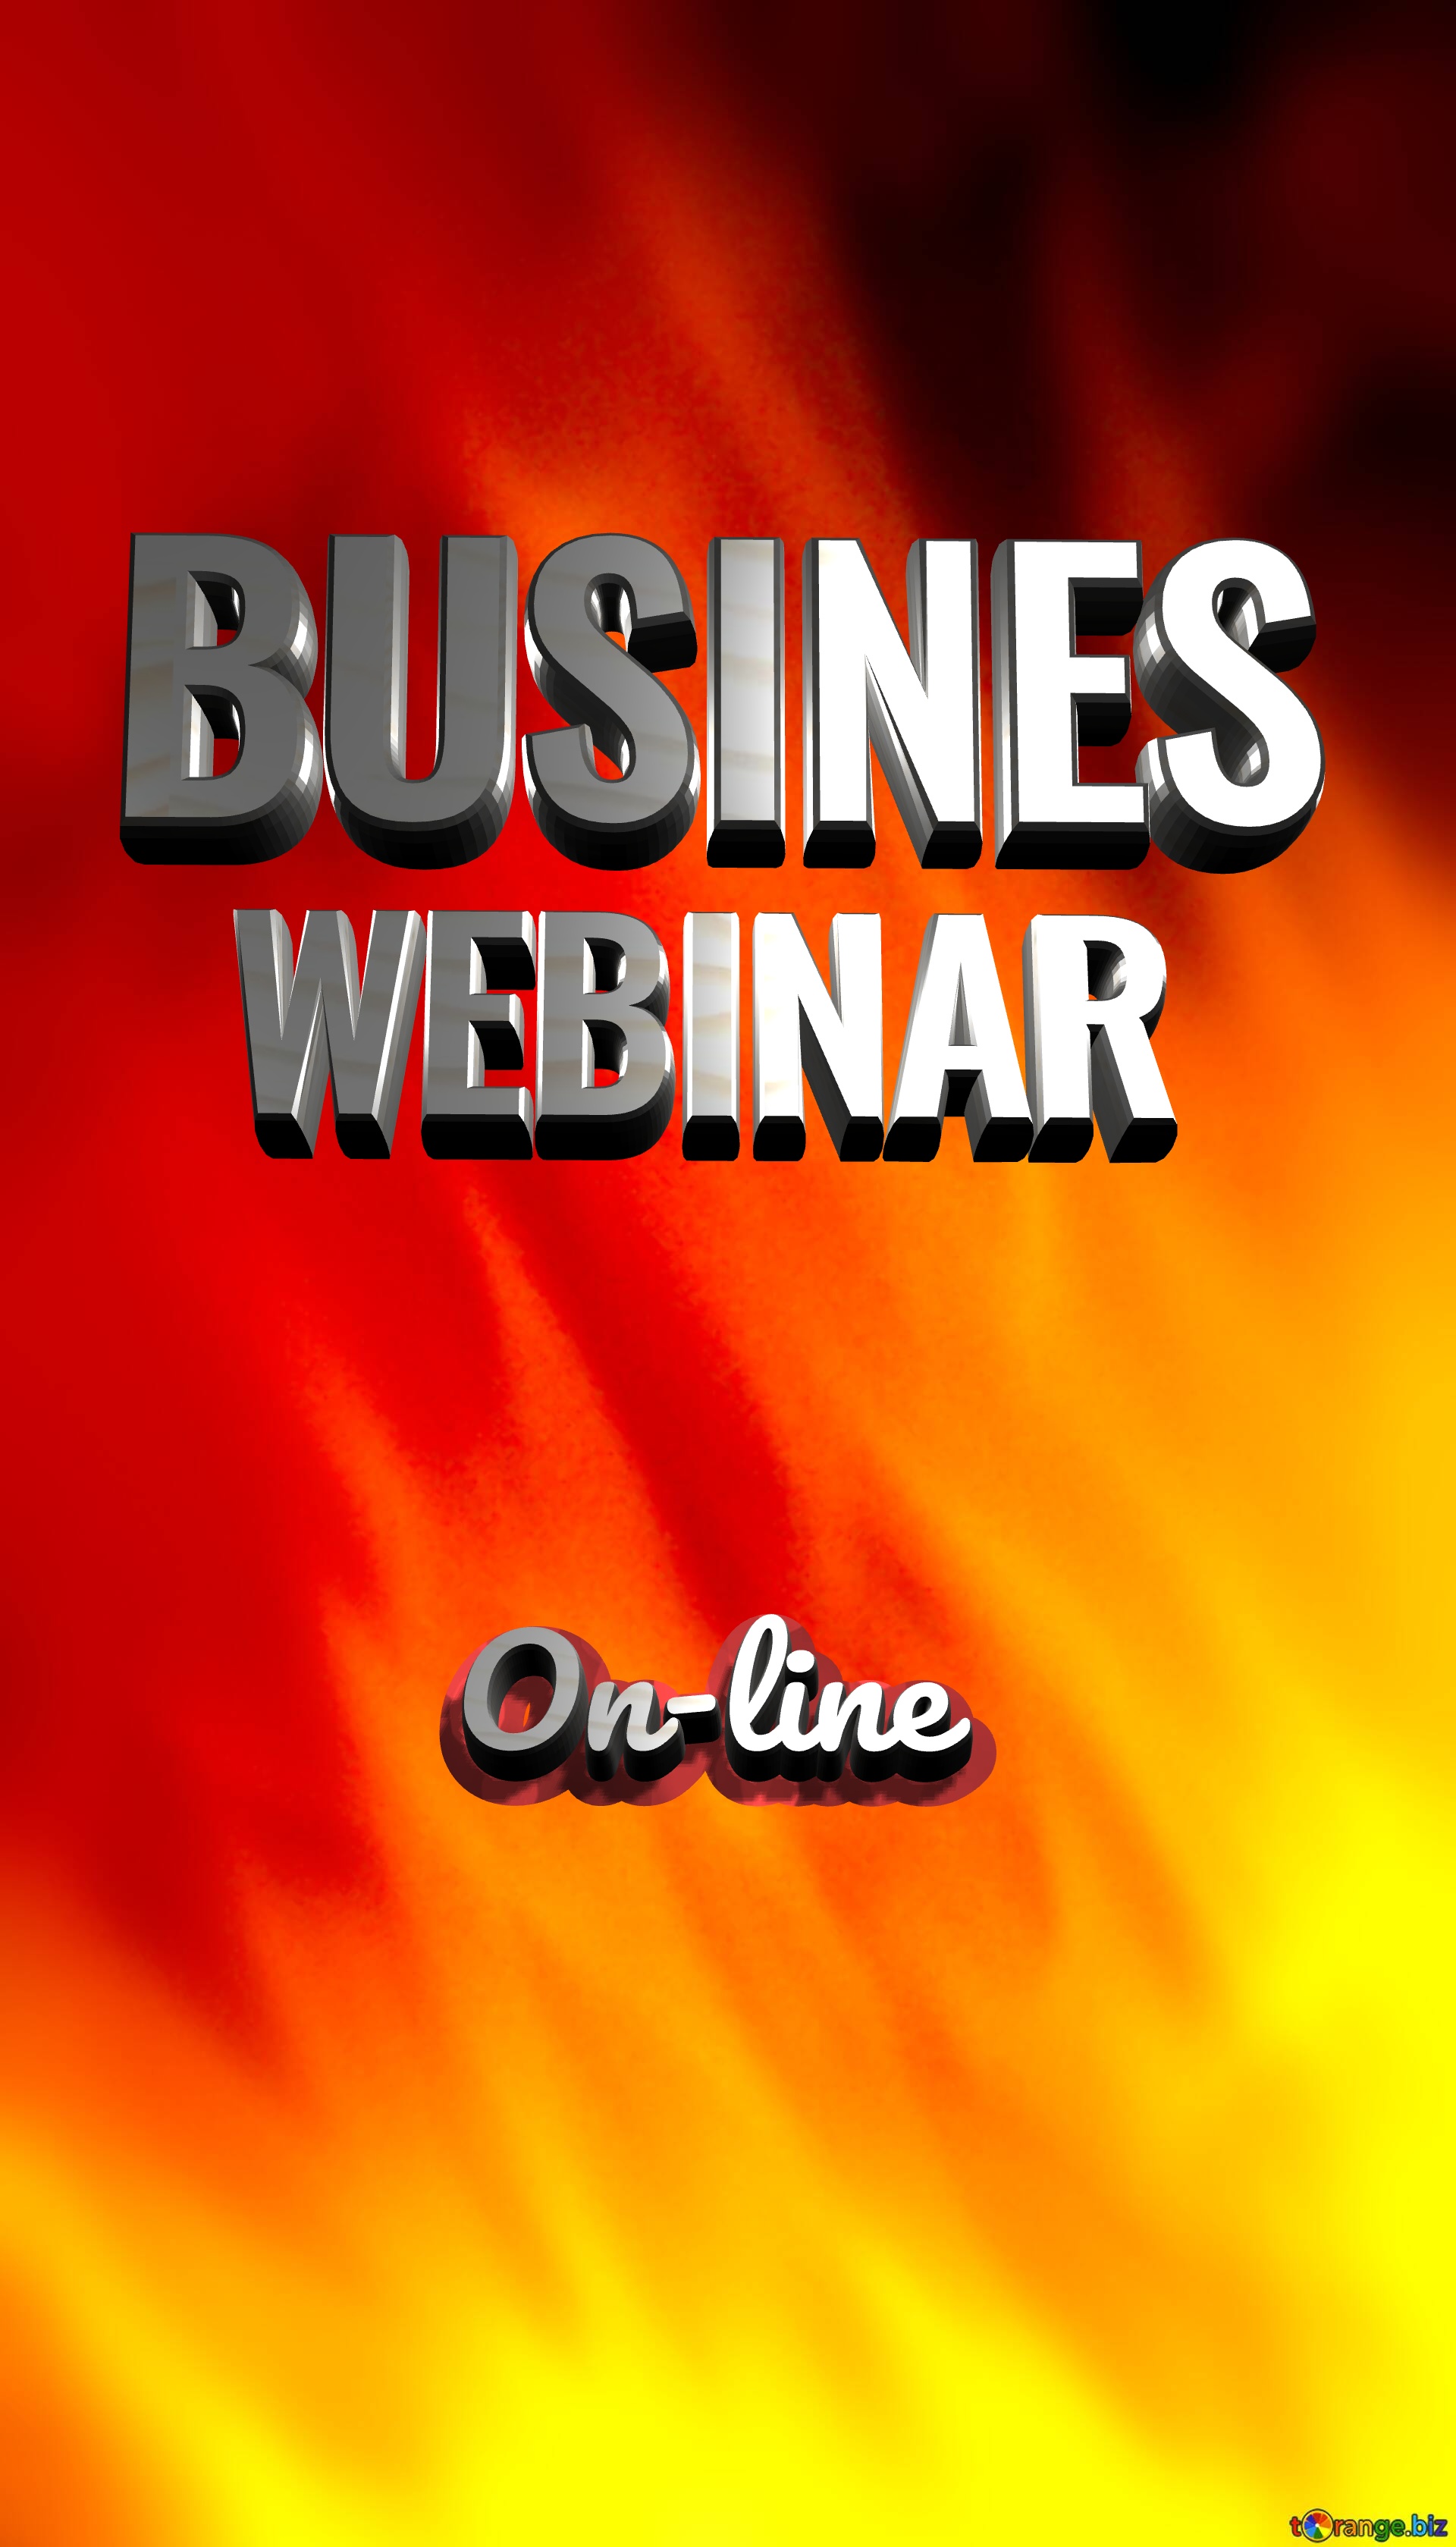 BUSINES WEBINAR On-line HOT SALE flame banner background №0